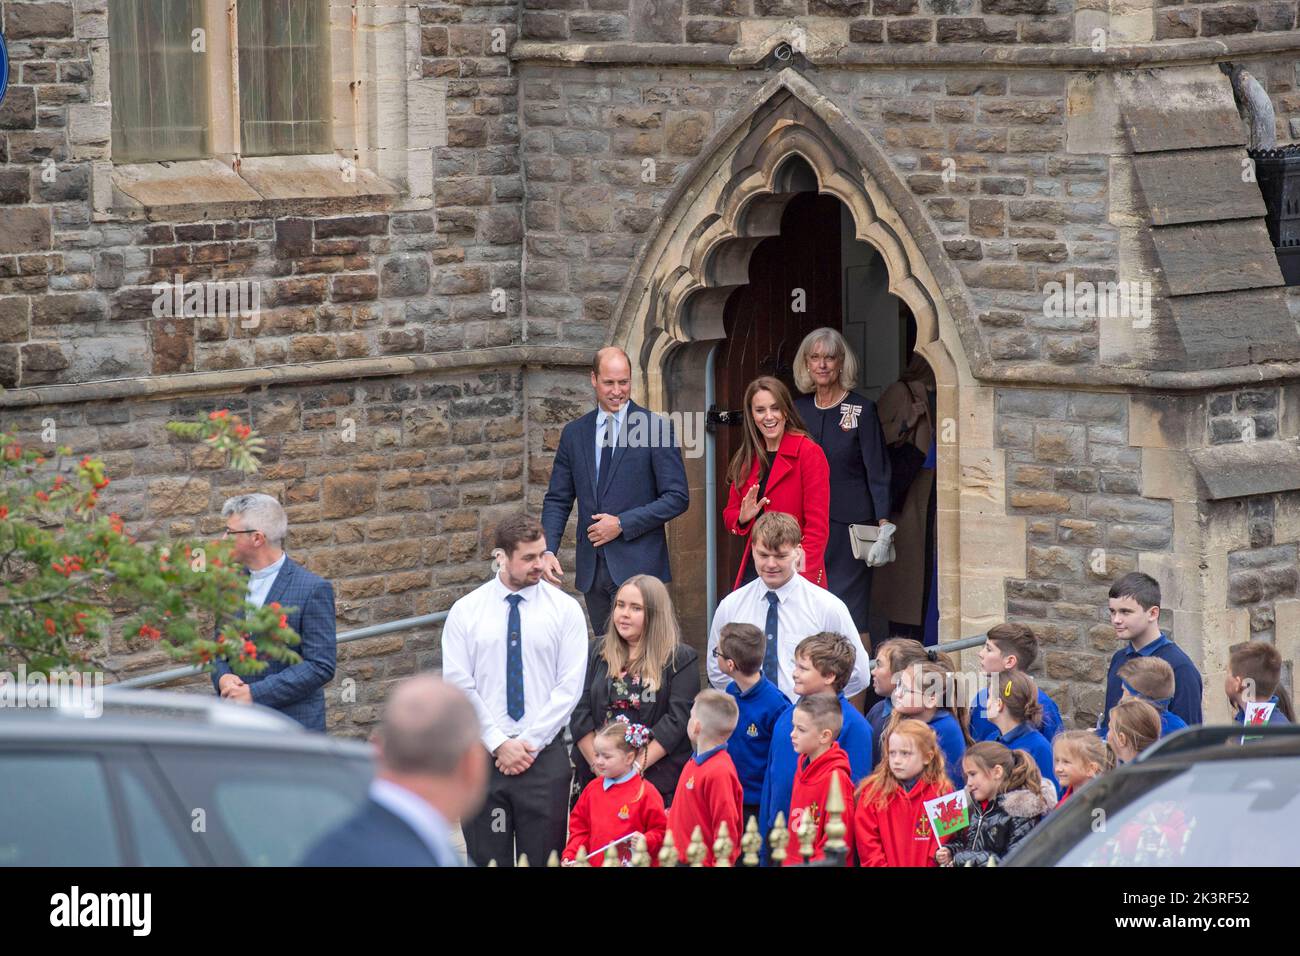 Il Principe Guglielmo e Caterina Principessa del Galles durante la loro visita a Swansea questo pomeriggio. La coppia reale visitò la chiesa di San Tommaso a Swansea, che sostiene le persone nella zona locale e attraverso Swansea. Foto Stock